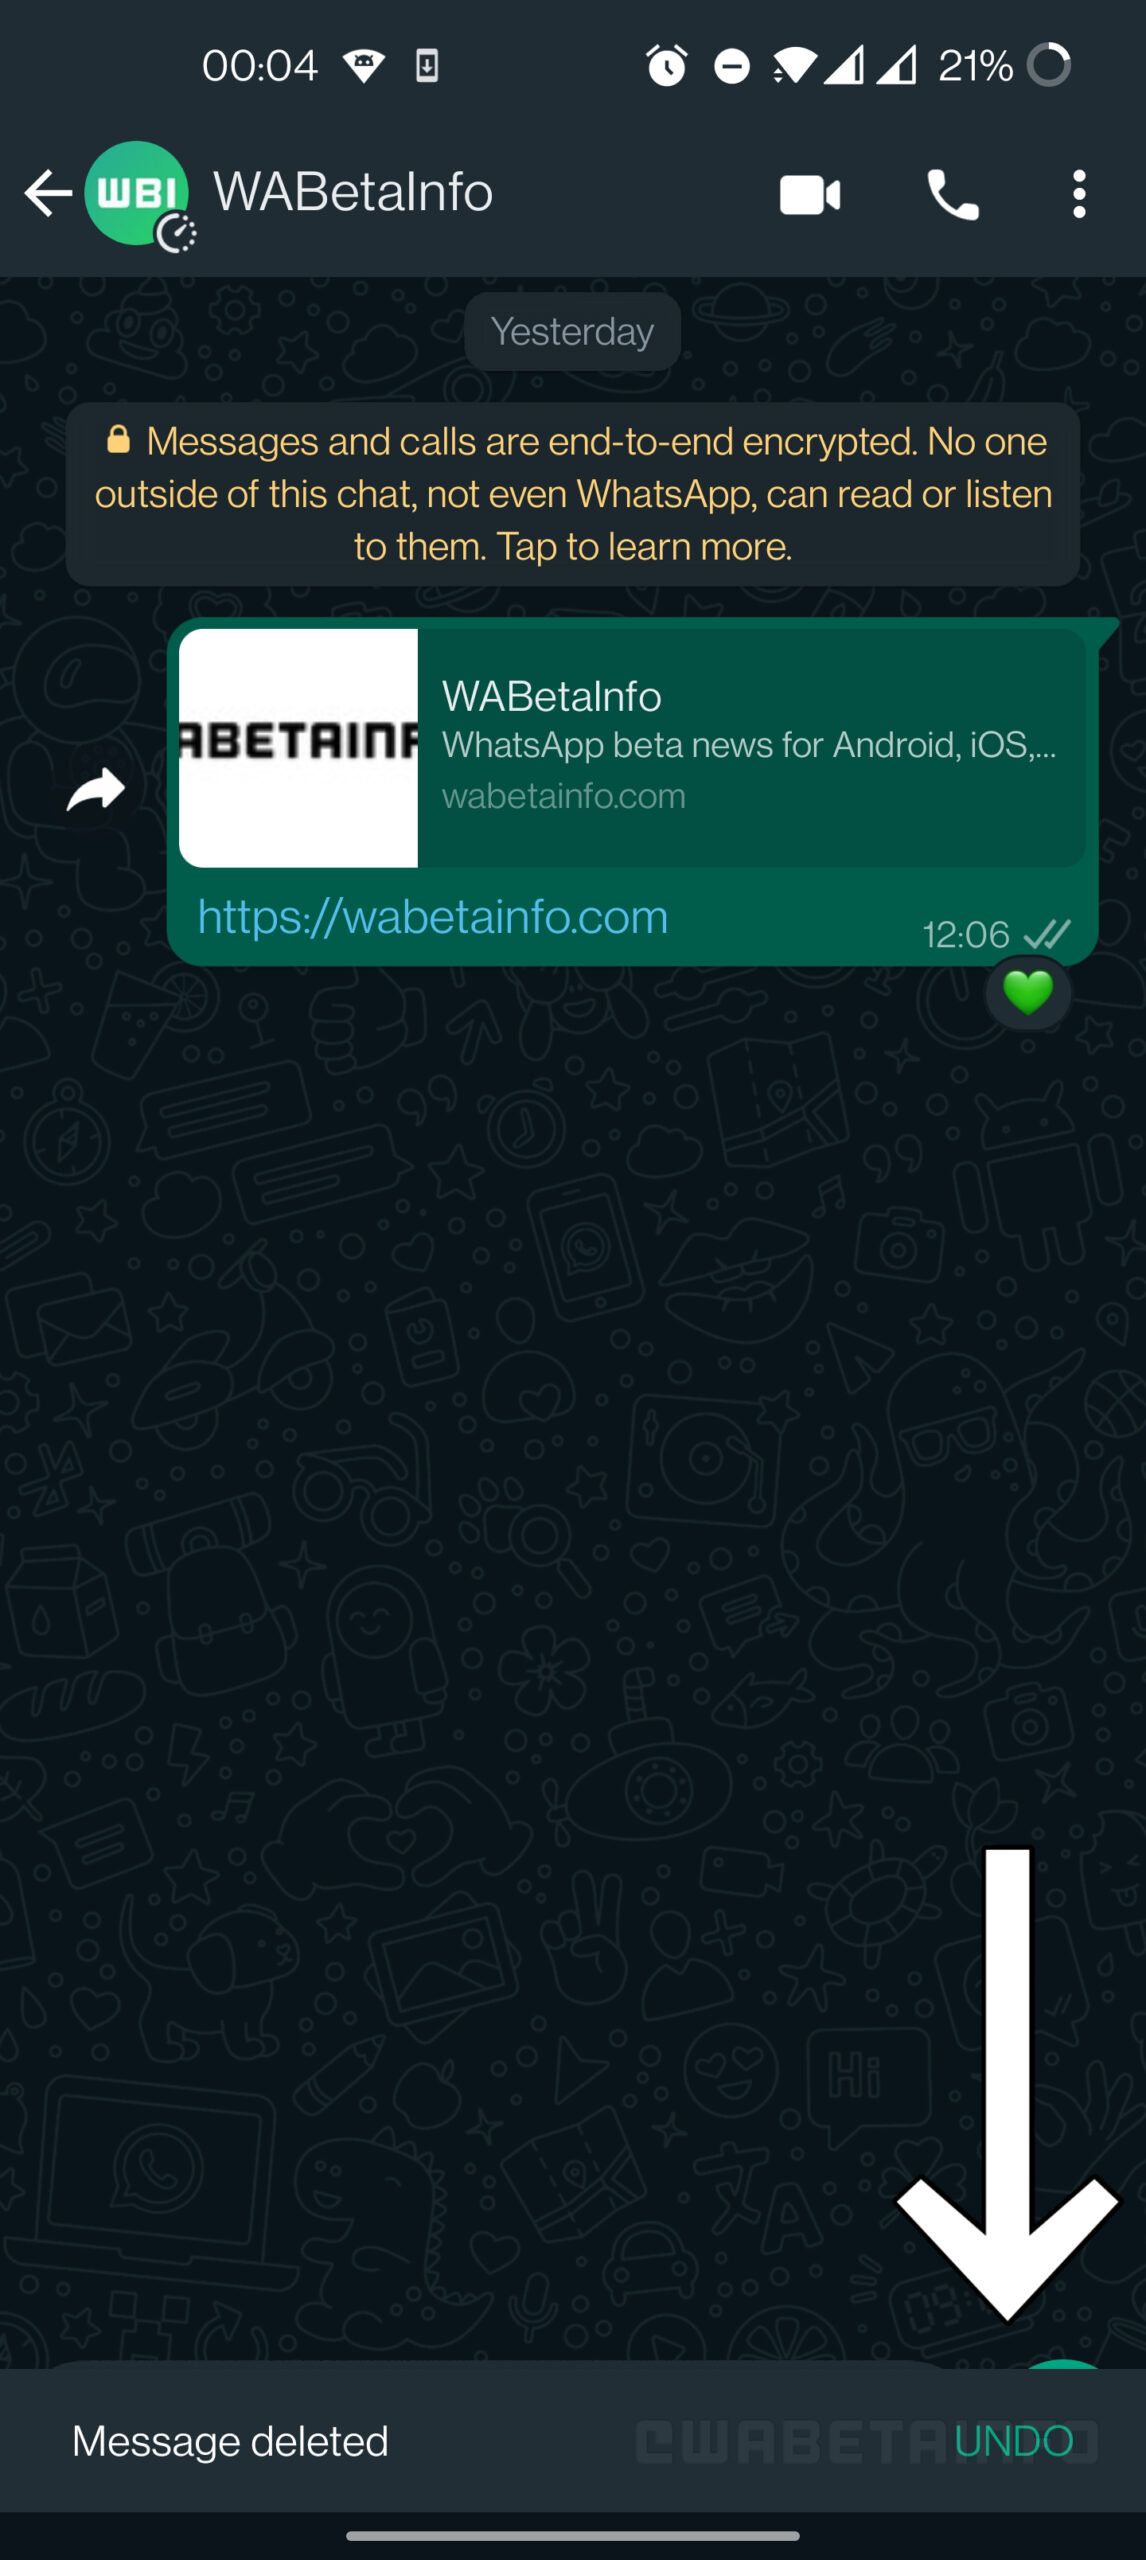 A representative image of the WhatsApp undo feature